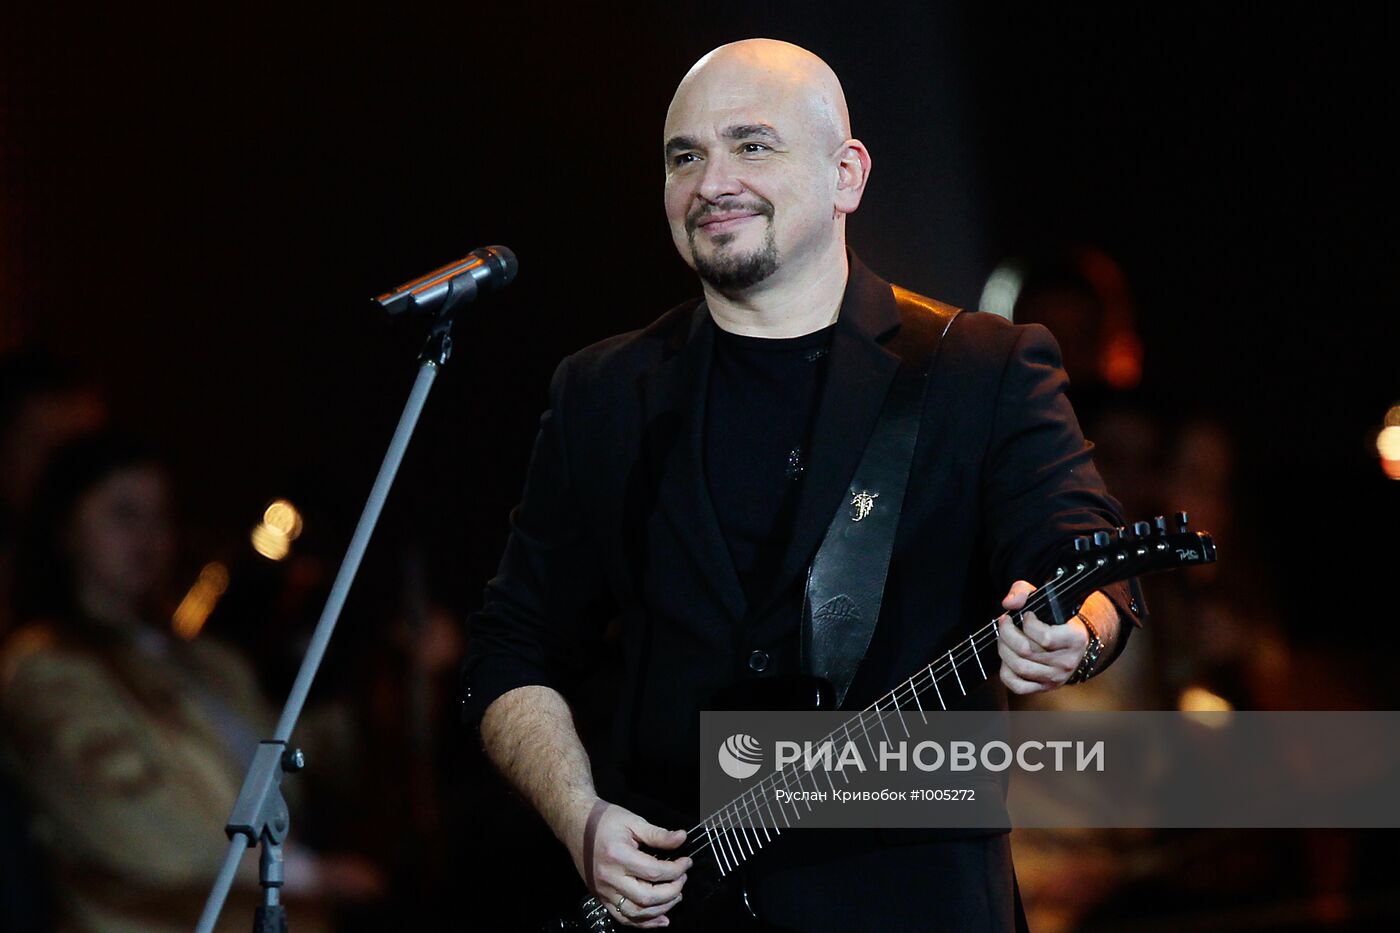 Концерт, посвященный 50-летию Кремлевского дворца